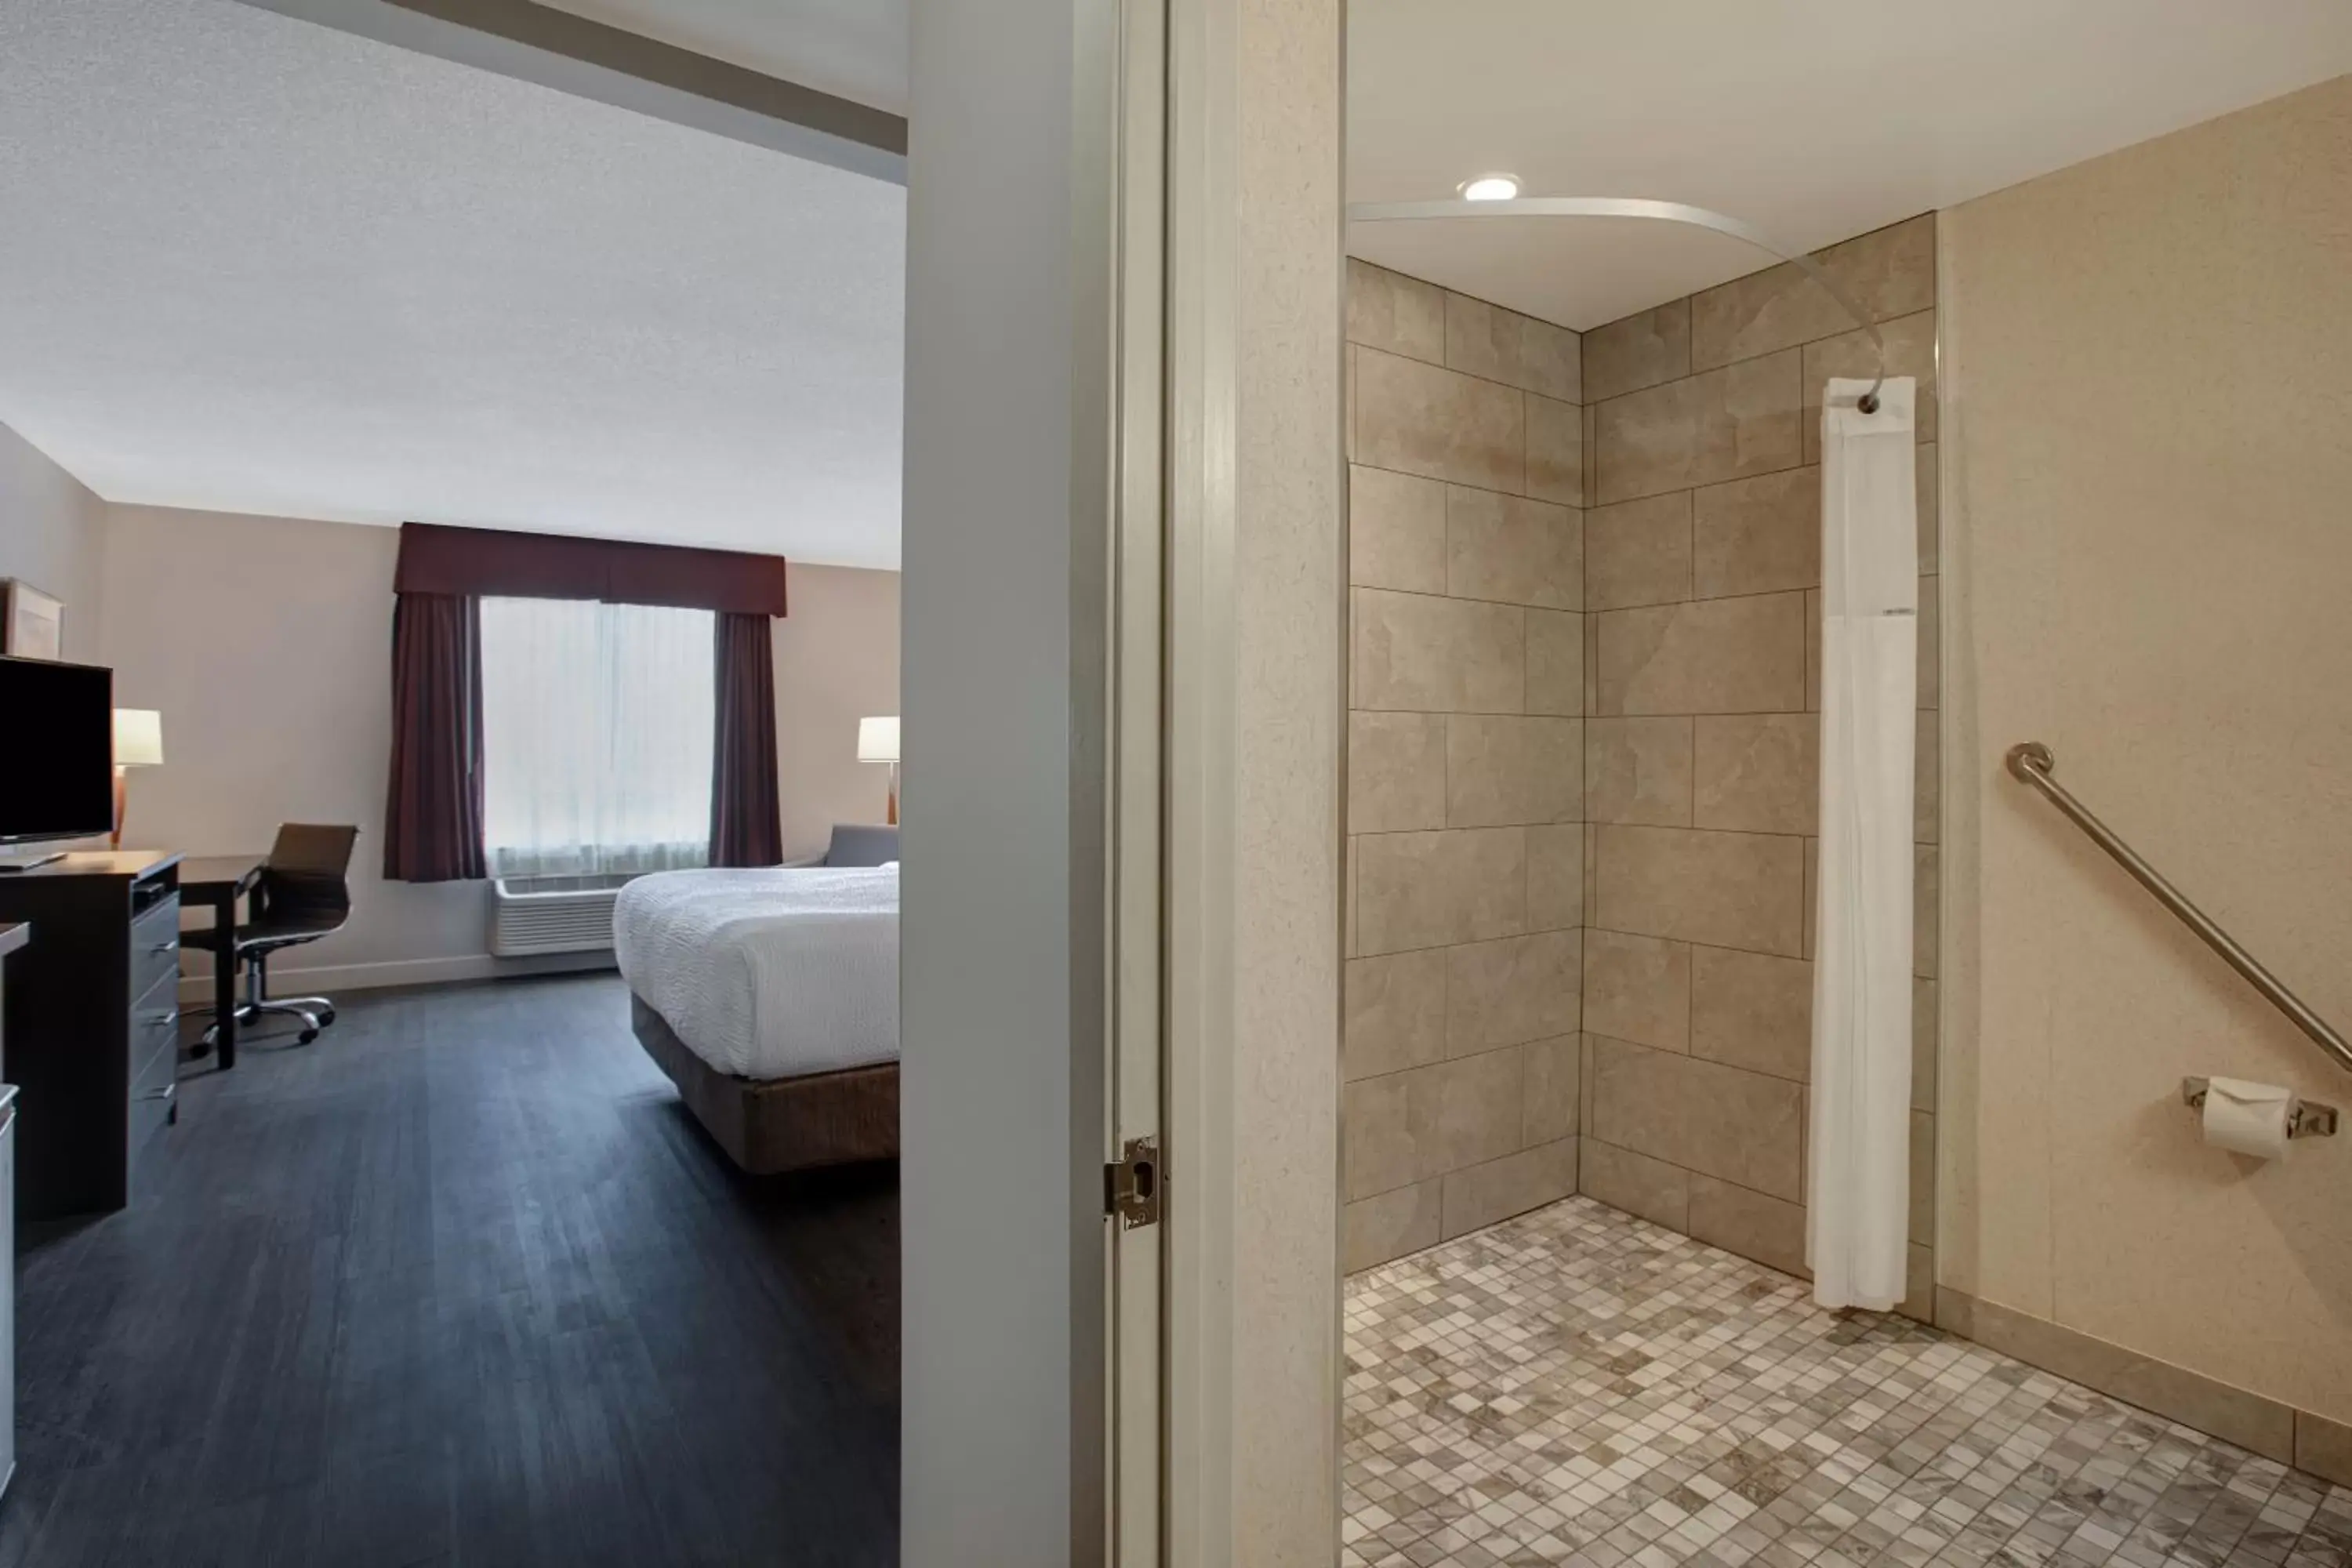 Bedroom, Bathroom in Days Inn & Suites by Wyndham Collingwood